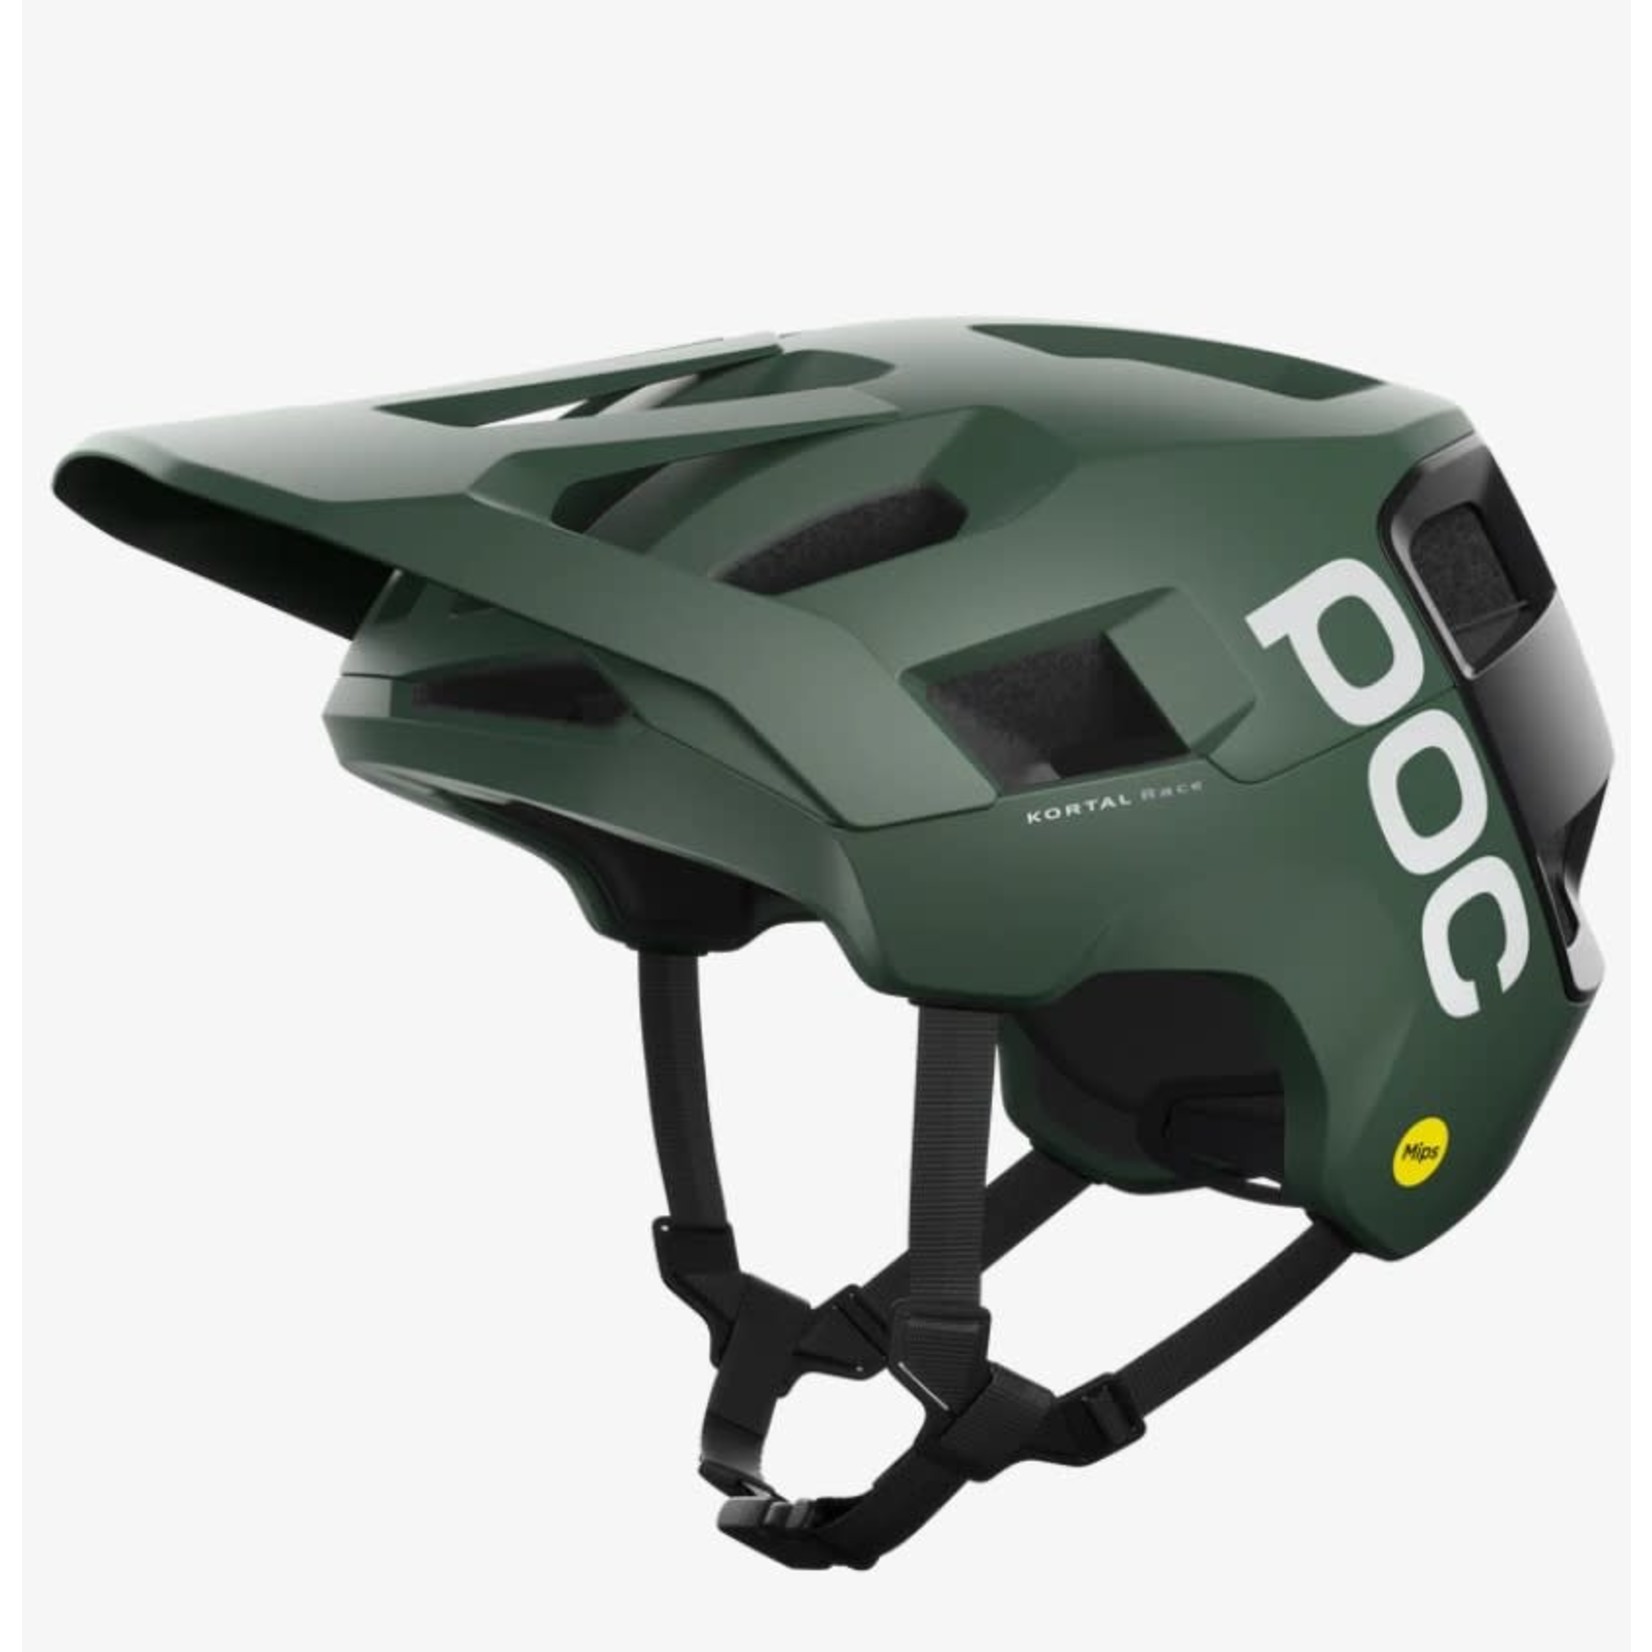 POC POC Helmet - Kortal Race MIPS Green/Black Matte Extra Small/Small